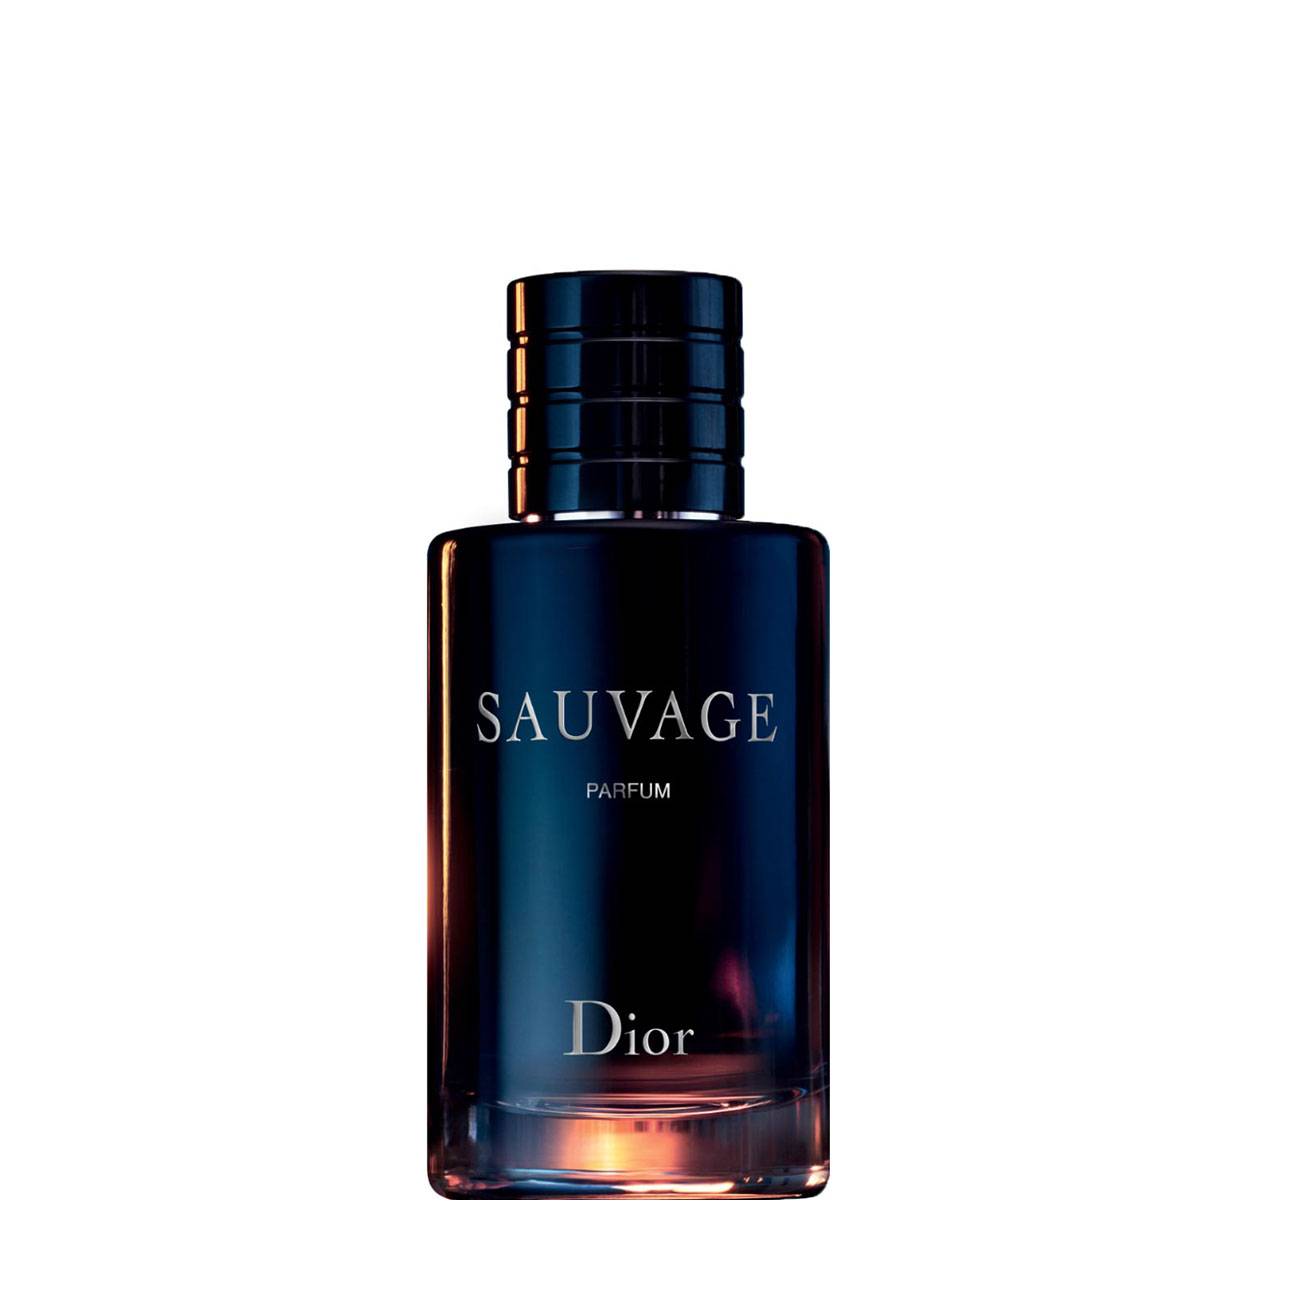 Apa de Parfum Dior SAUVAGE PARFUM 60ml cu comanda online